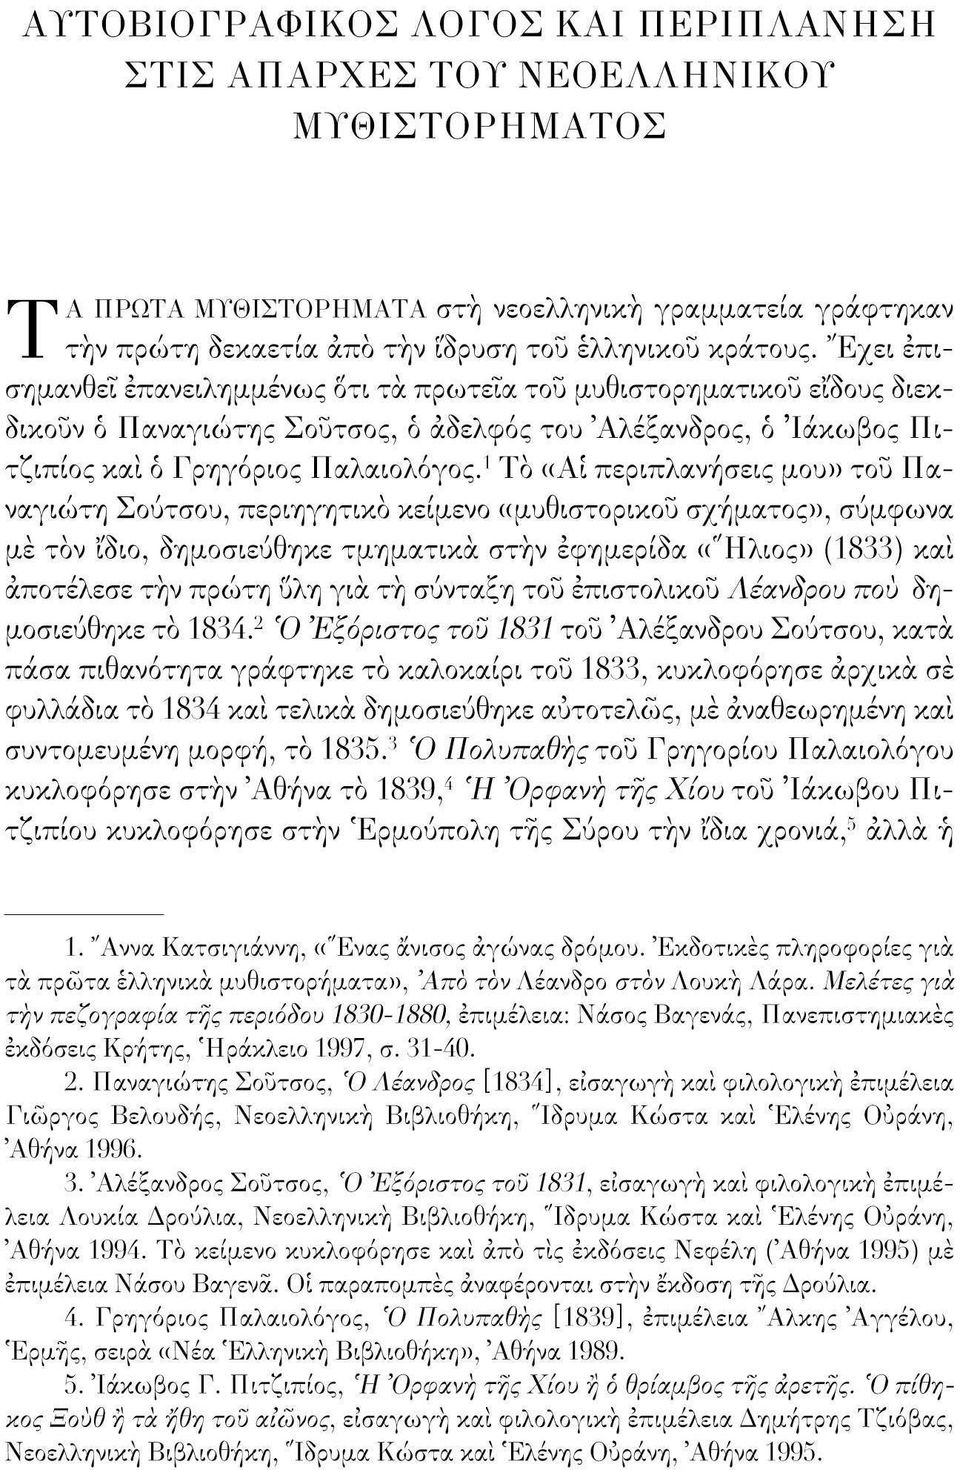 1 Το «Αι περιπλανήσεις μου» του Παναγιώτη Σούτσου 1 περιηγητικό κείμενο «μυθιστορικου σχήματος», σύμφωνα με τόν ίδιο, δημοσιεύθηκε τμηματικά στην εφημερίδα (("Ηλιος» (1833) και αποτέλεσε τήν πρώτη